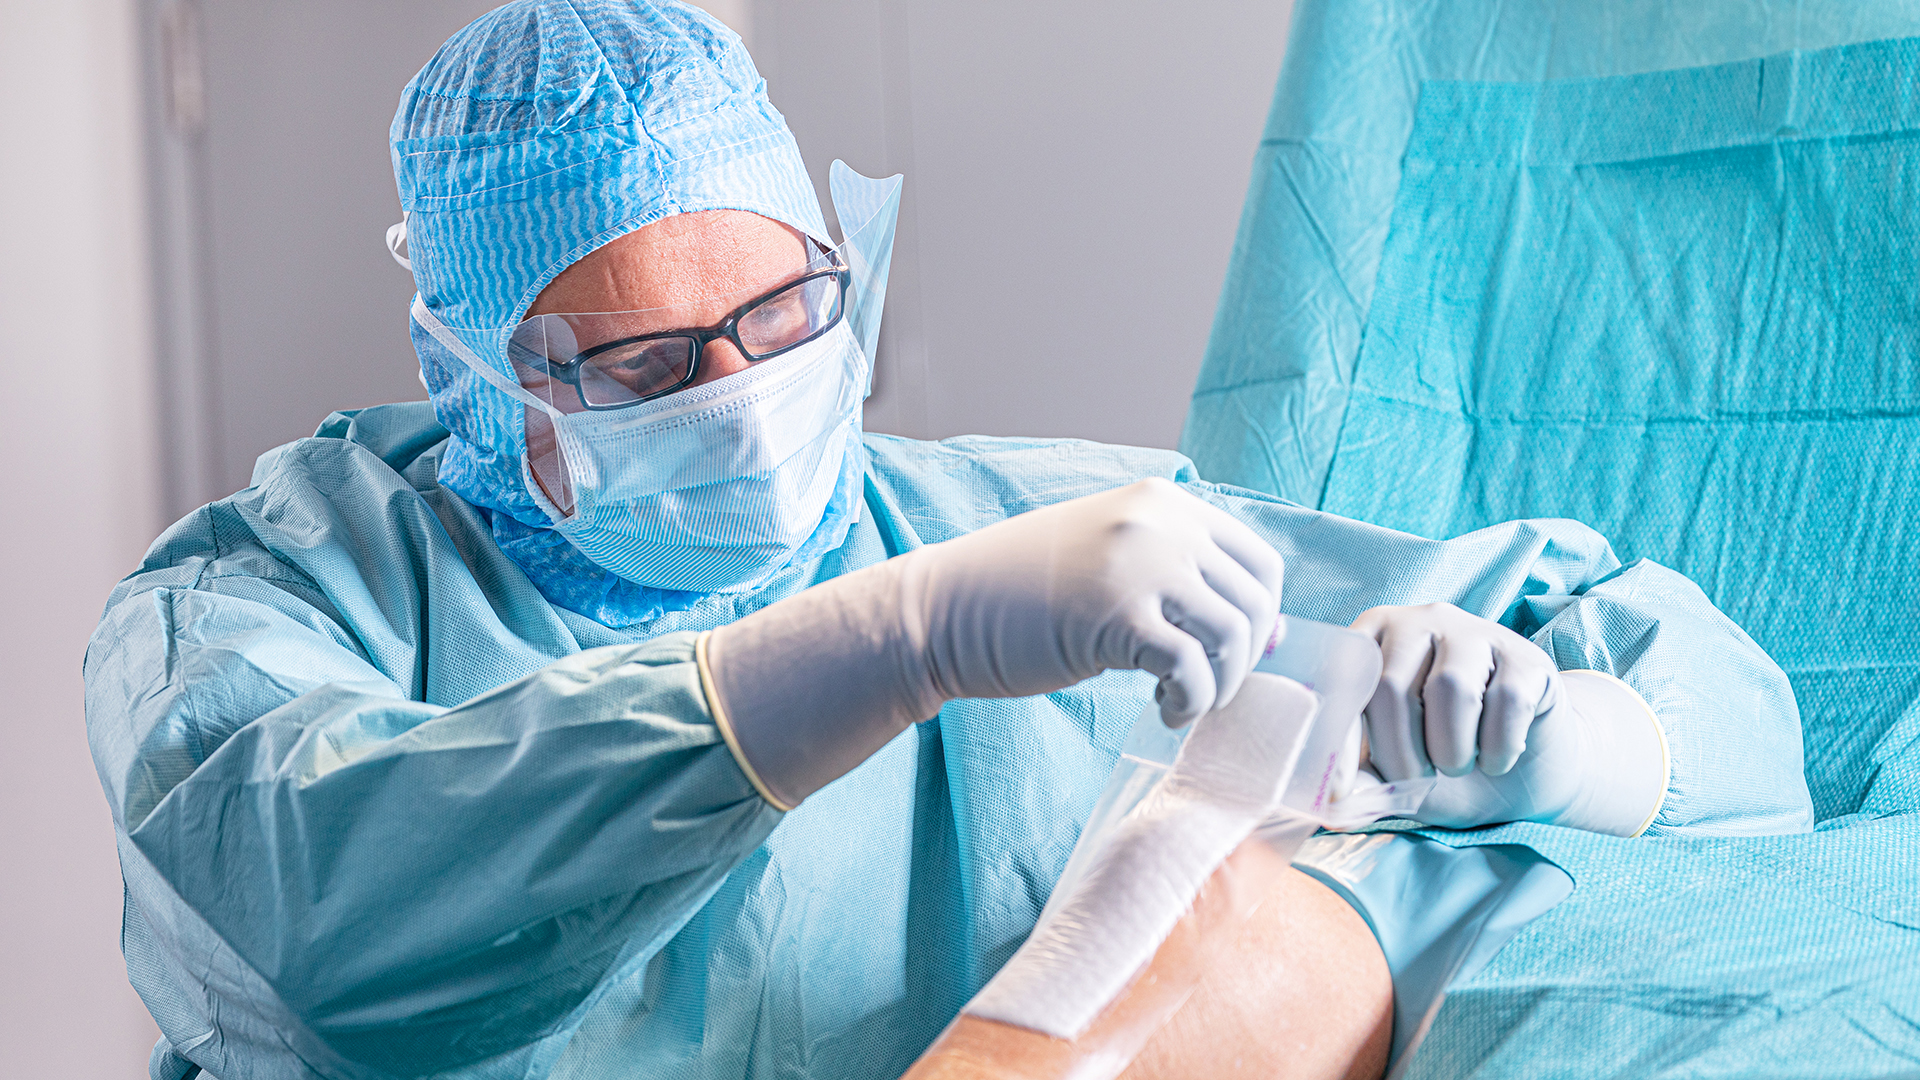 Arts gekleed in operatiekleding die tijdens een operatie een wondverband aanbrengt